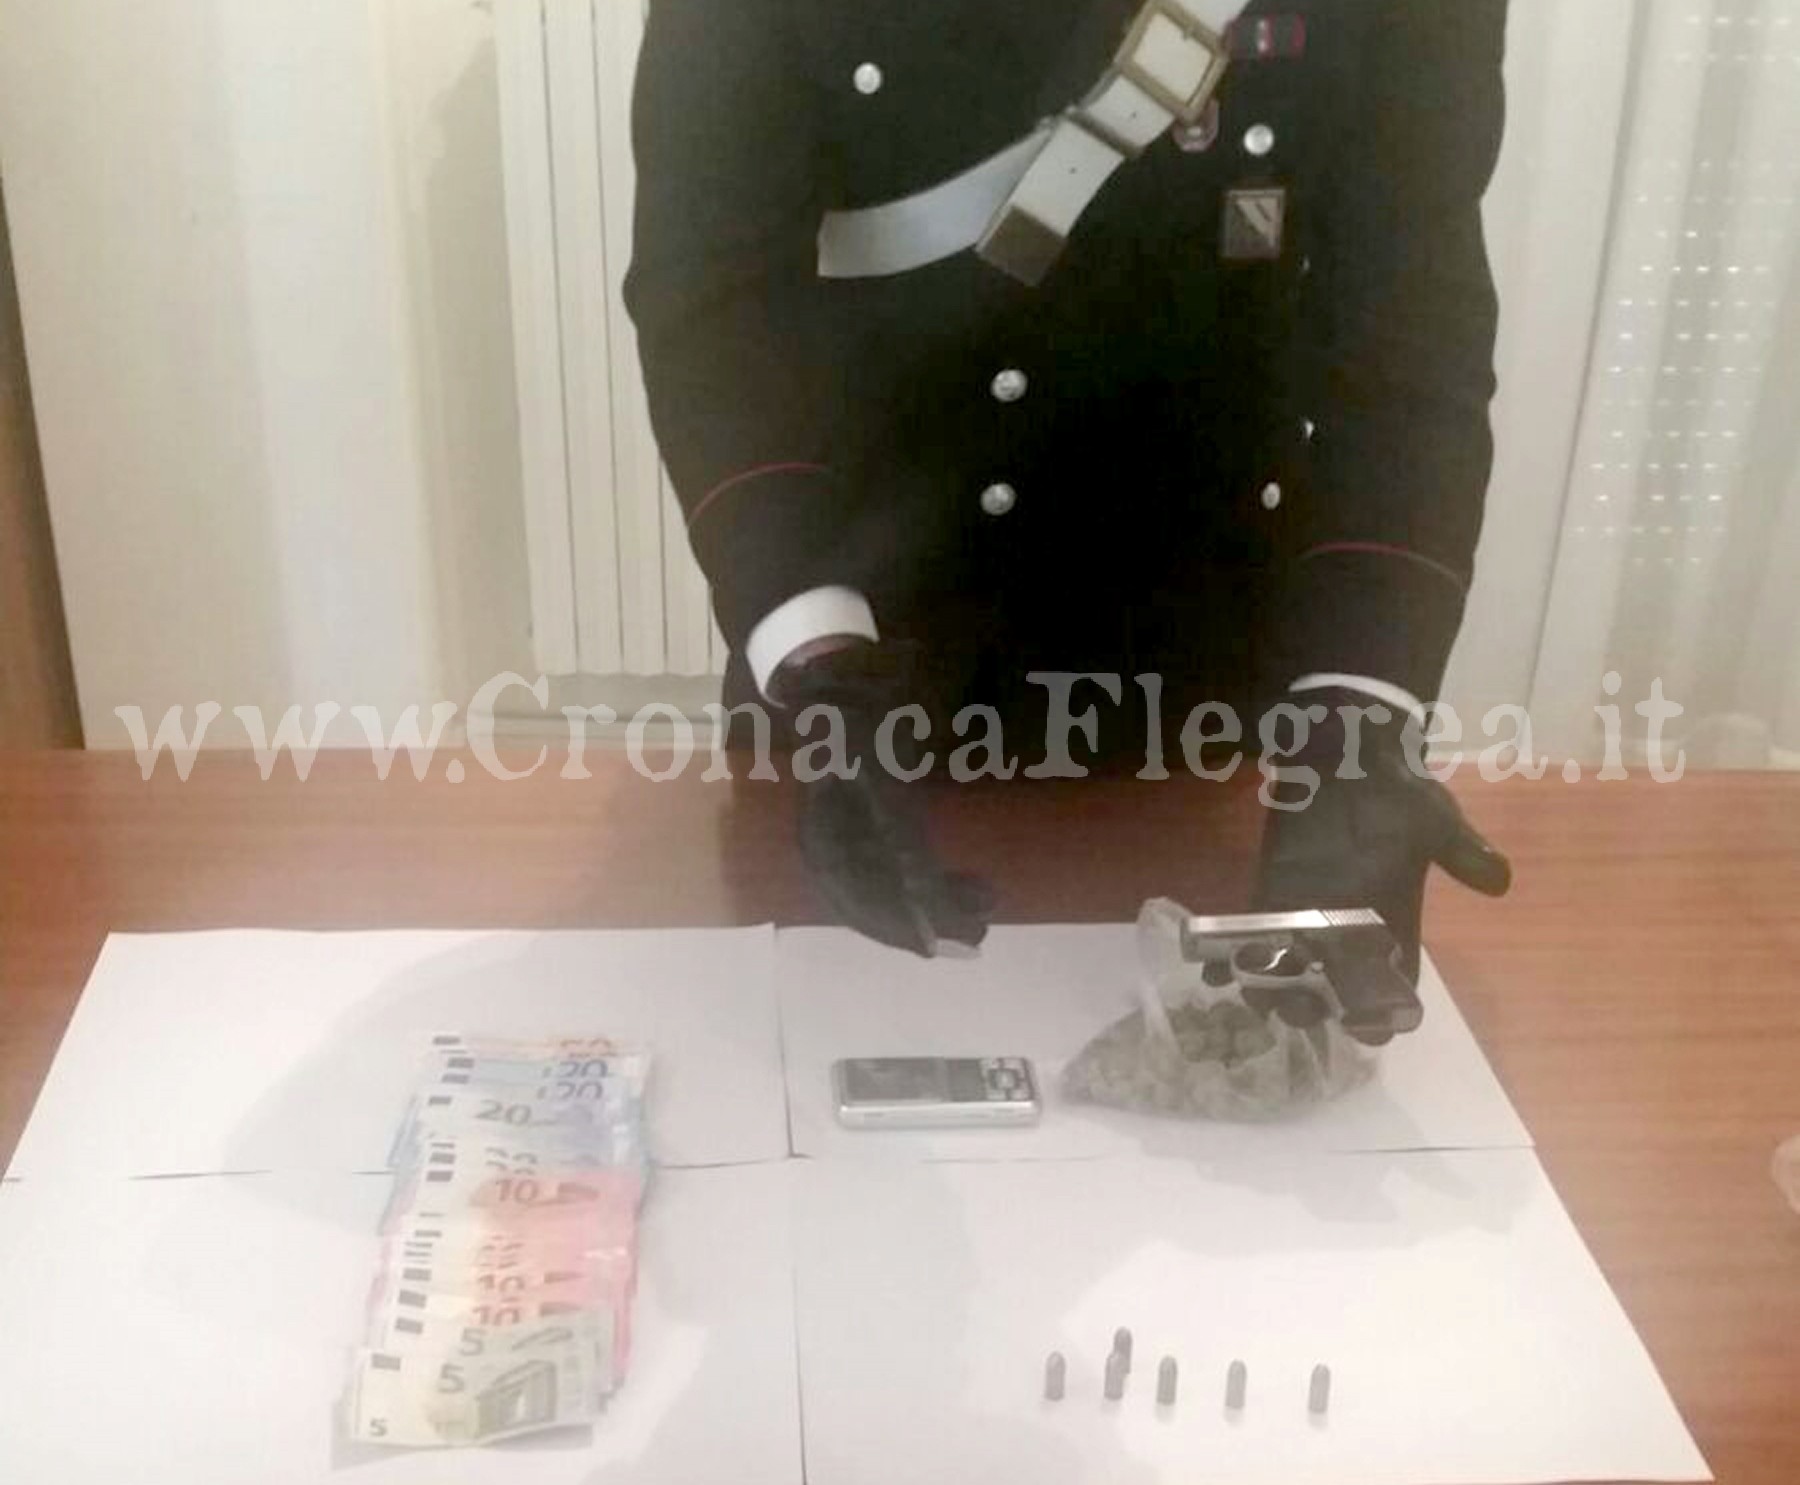 All’arrivo dei carabinieri tenta di lanciare una pistola dal balcone: arrestato